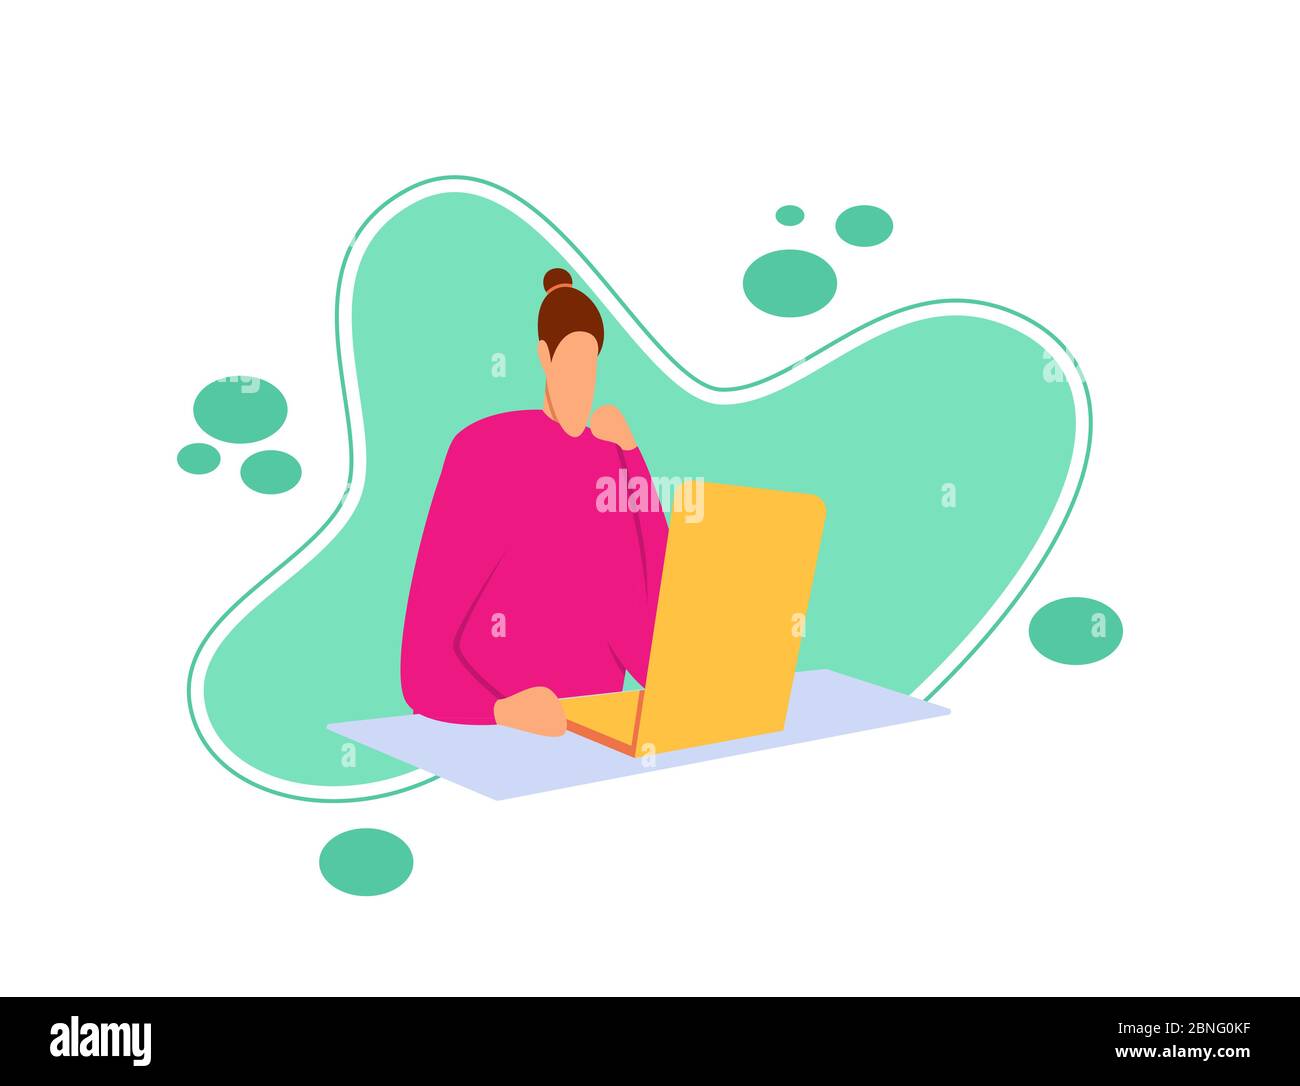 Illustrazione piatta di una ragazza seduta leggendo le ultime notizie usando un netbook. Carattere cartoon stile piatto con il concetto di persone che leggono le notizie Illustrazione Vettoriale